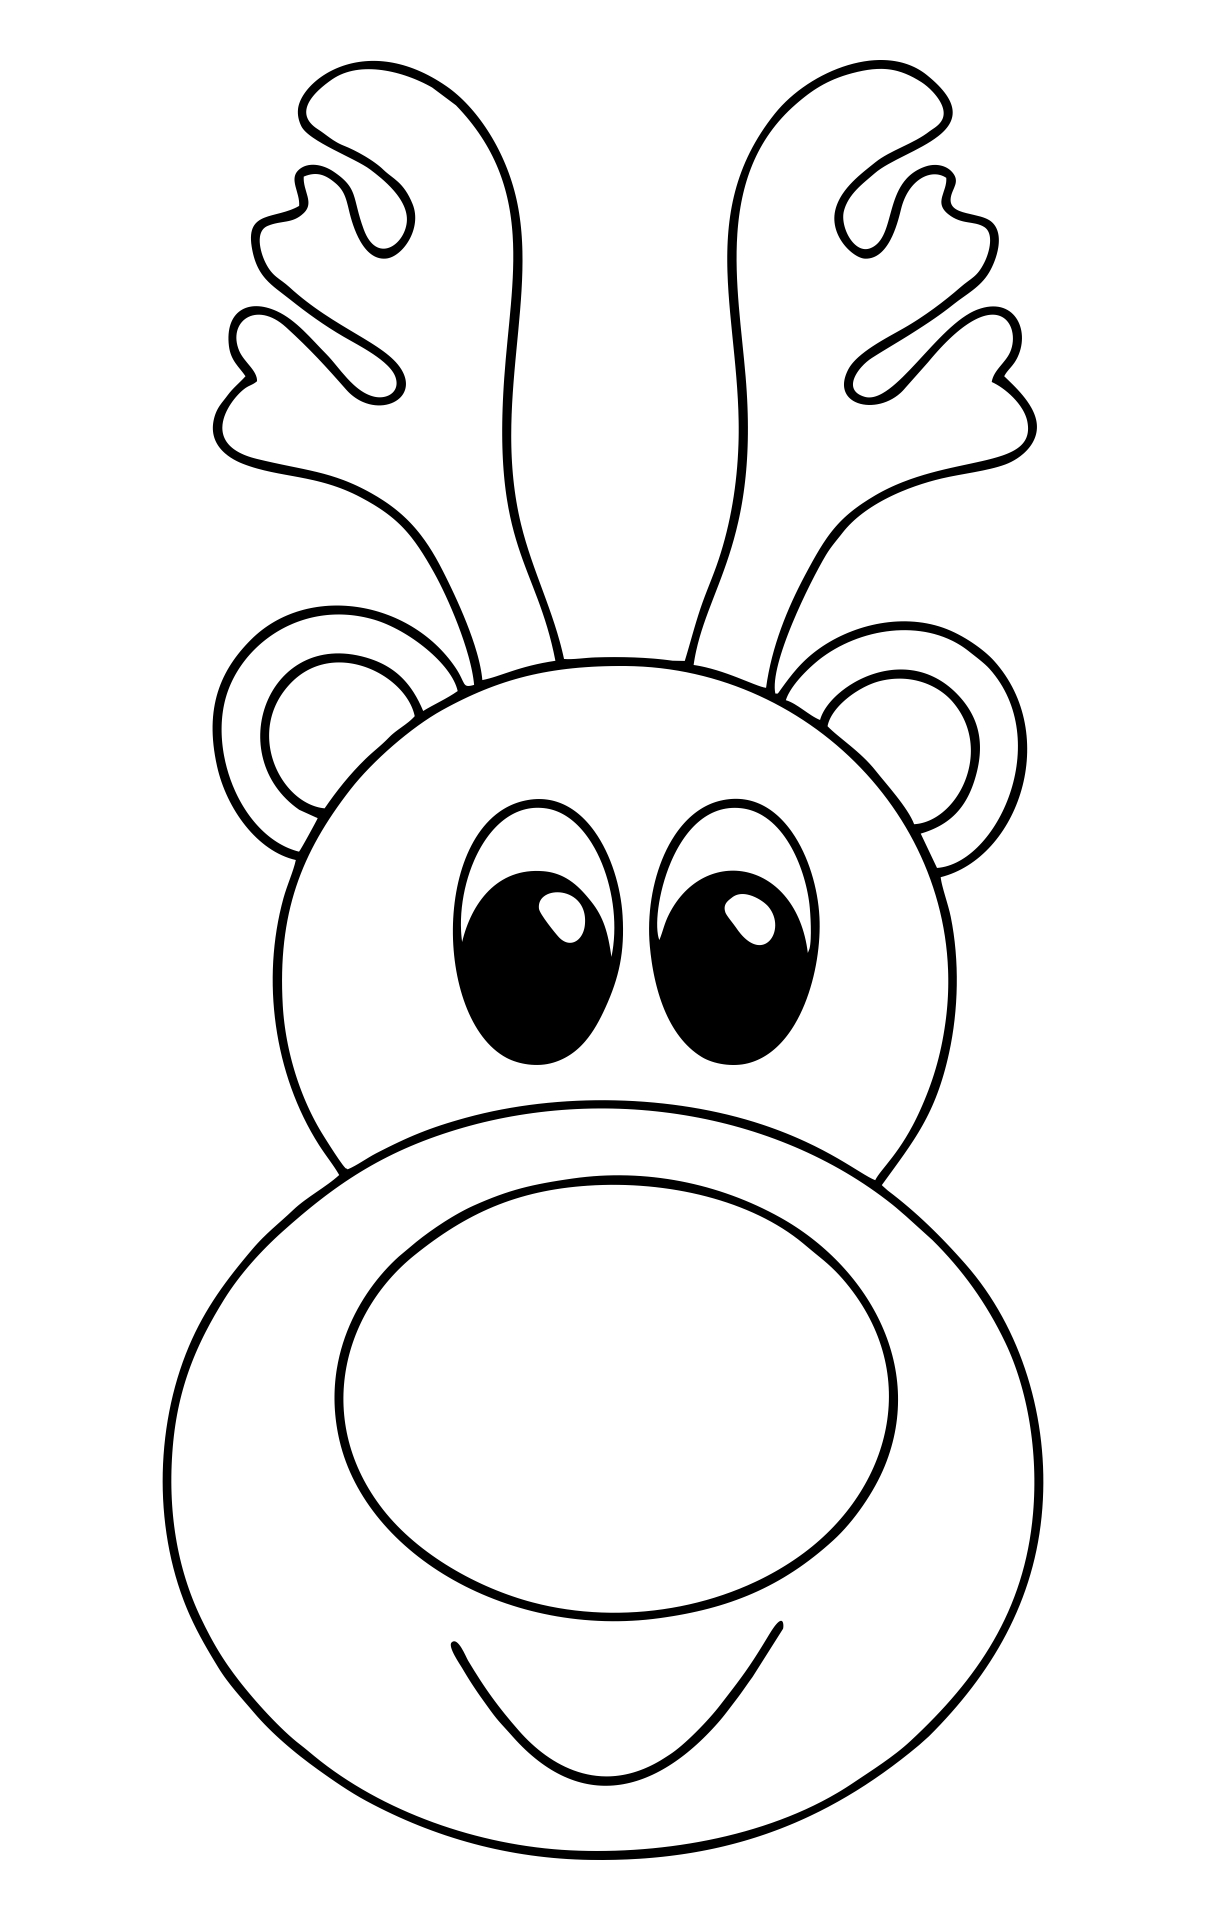 free-printable-reindeer-template-printable-world-holiday